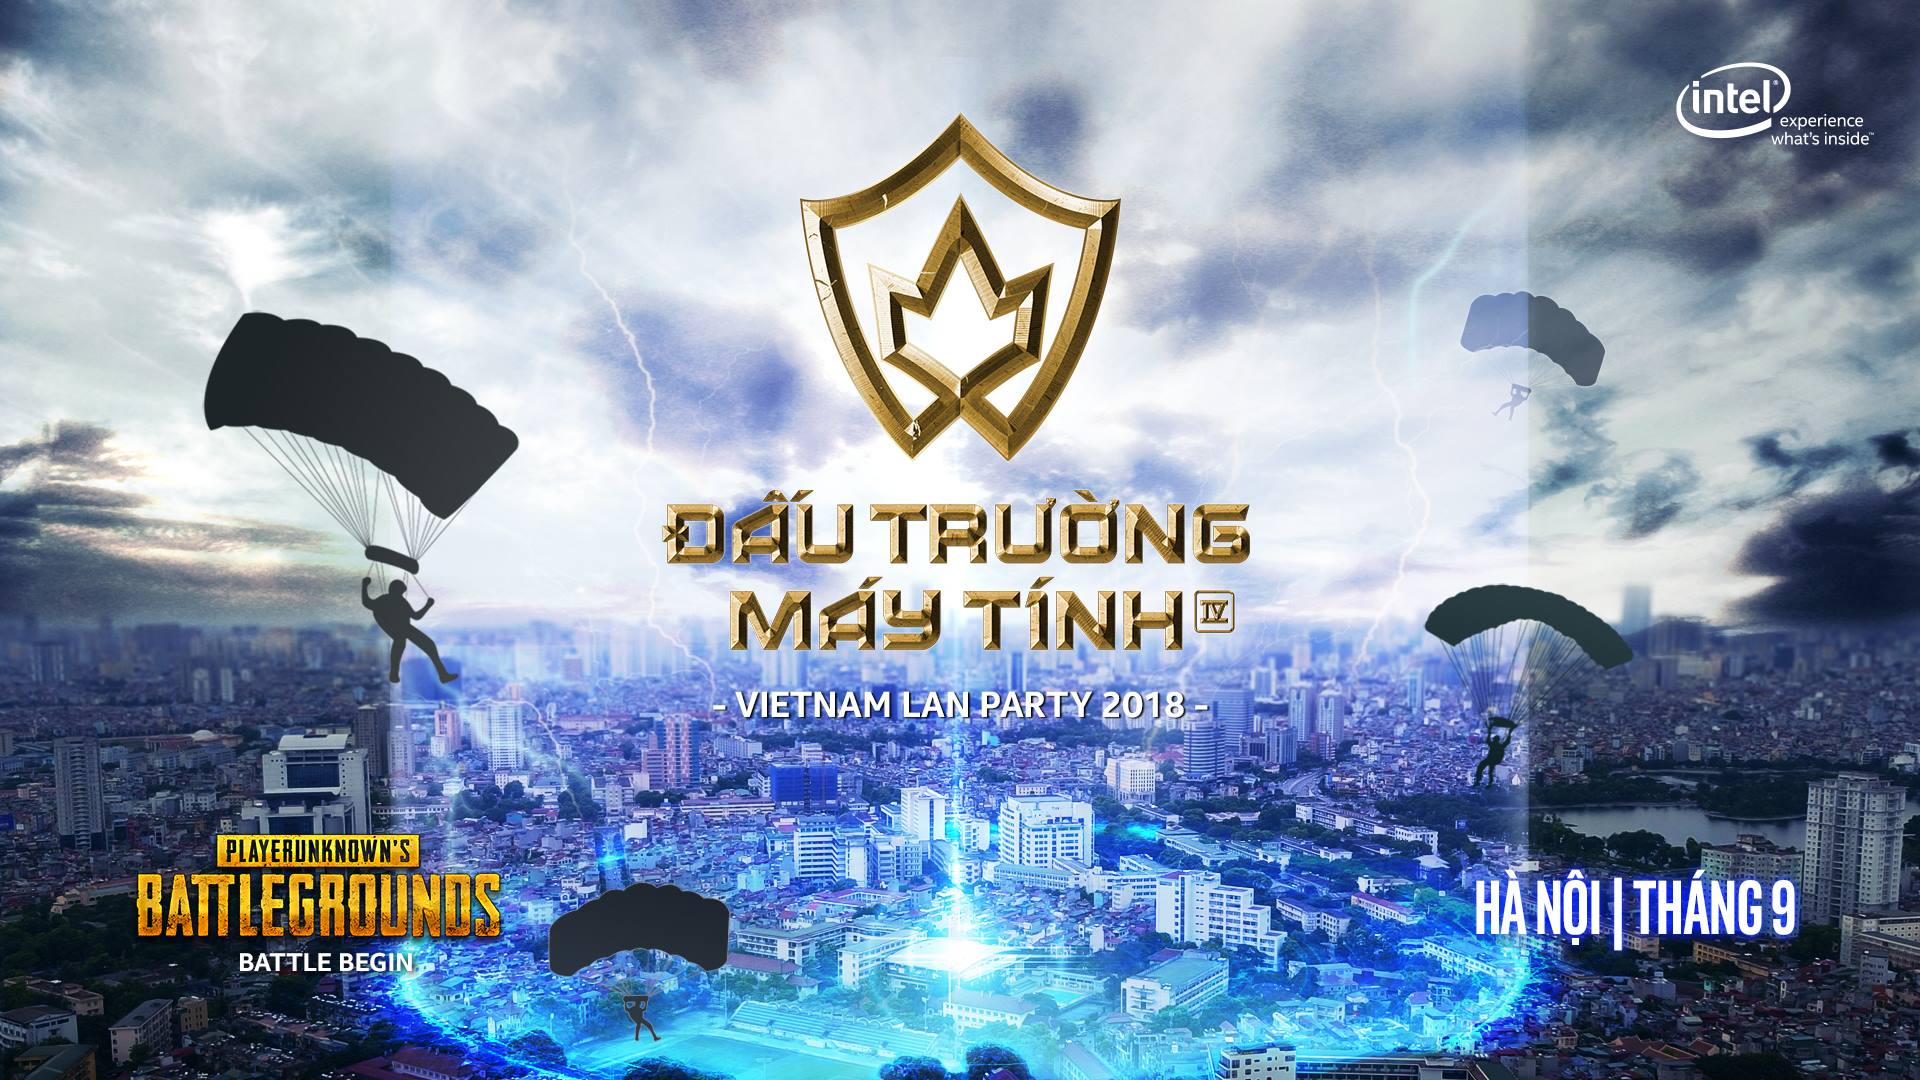 Vietnam LAN Party 2018 – Đấu Trường Máy Tính khởi tranh trong tháng 9